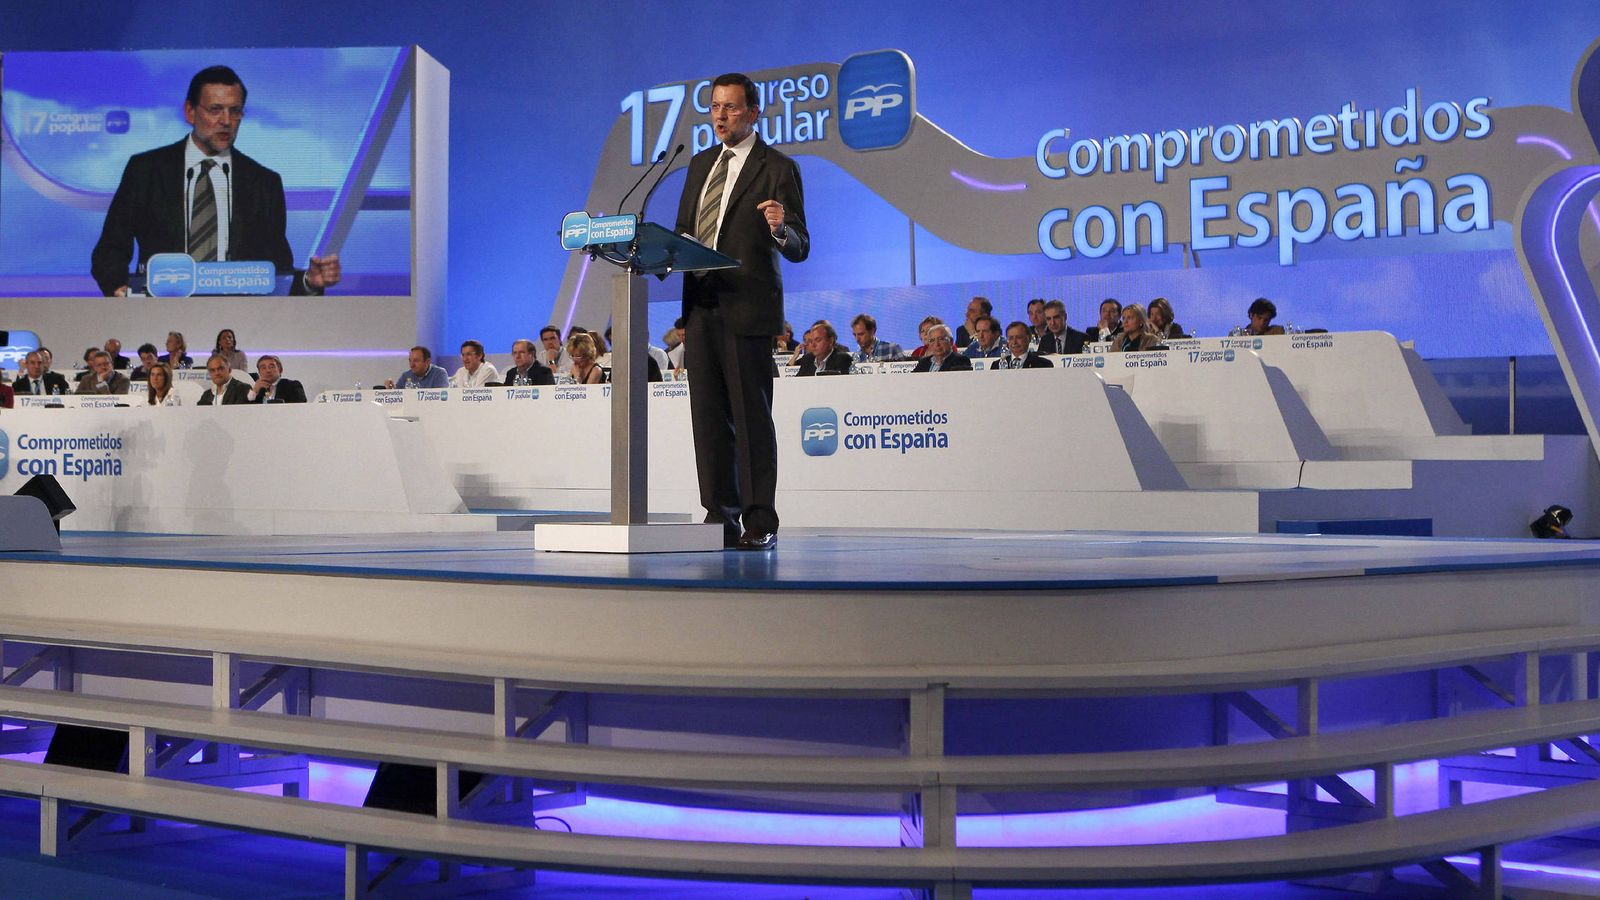 Foto: El presidente del PP, Mariano Rajoy, durante su intervención ante el plenario del XVII Congreso Nacional del partido en 2012. (EFE)